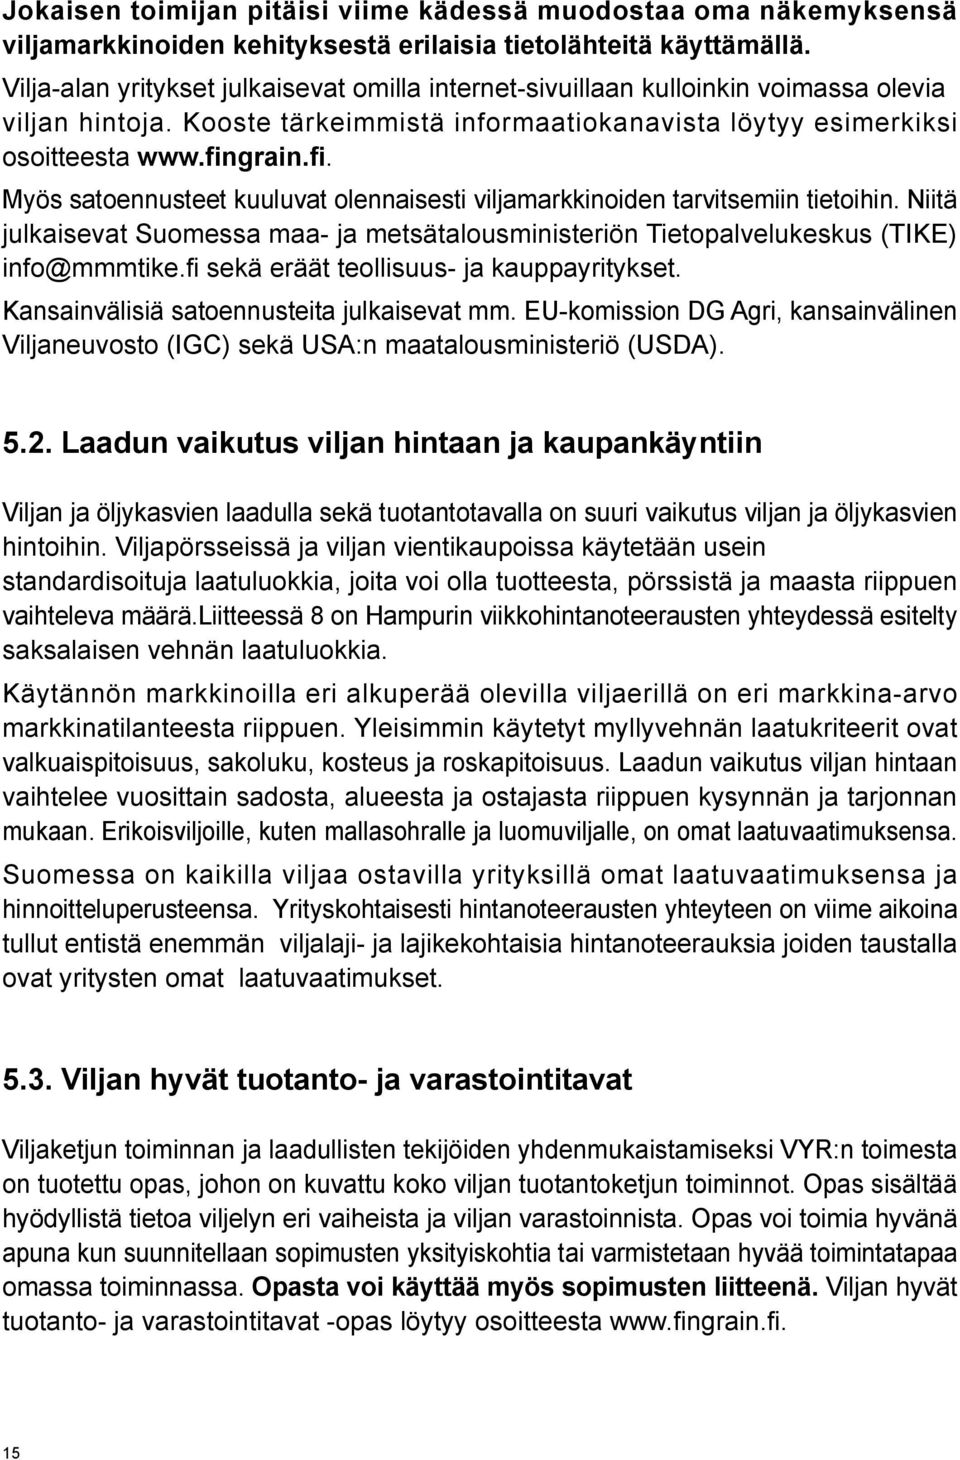 grain.fi. Myös satoennusteet kuuluvat olennaisesti viljamarkkinoiden tarvitsemiin tietoihin. Niitä julkaisevat Suomessa maa- ja metsätalousministeriön Tietopalvelukeskus (TIKE) info@mmmtike.